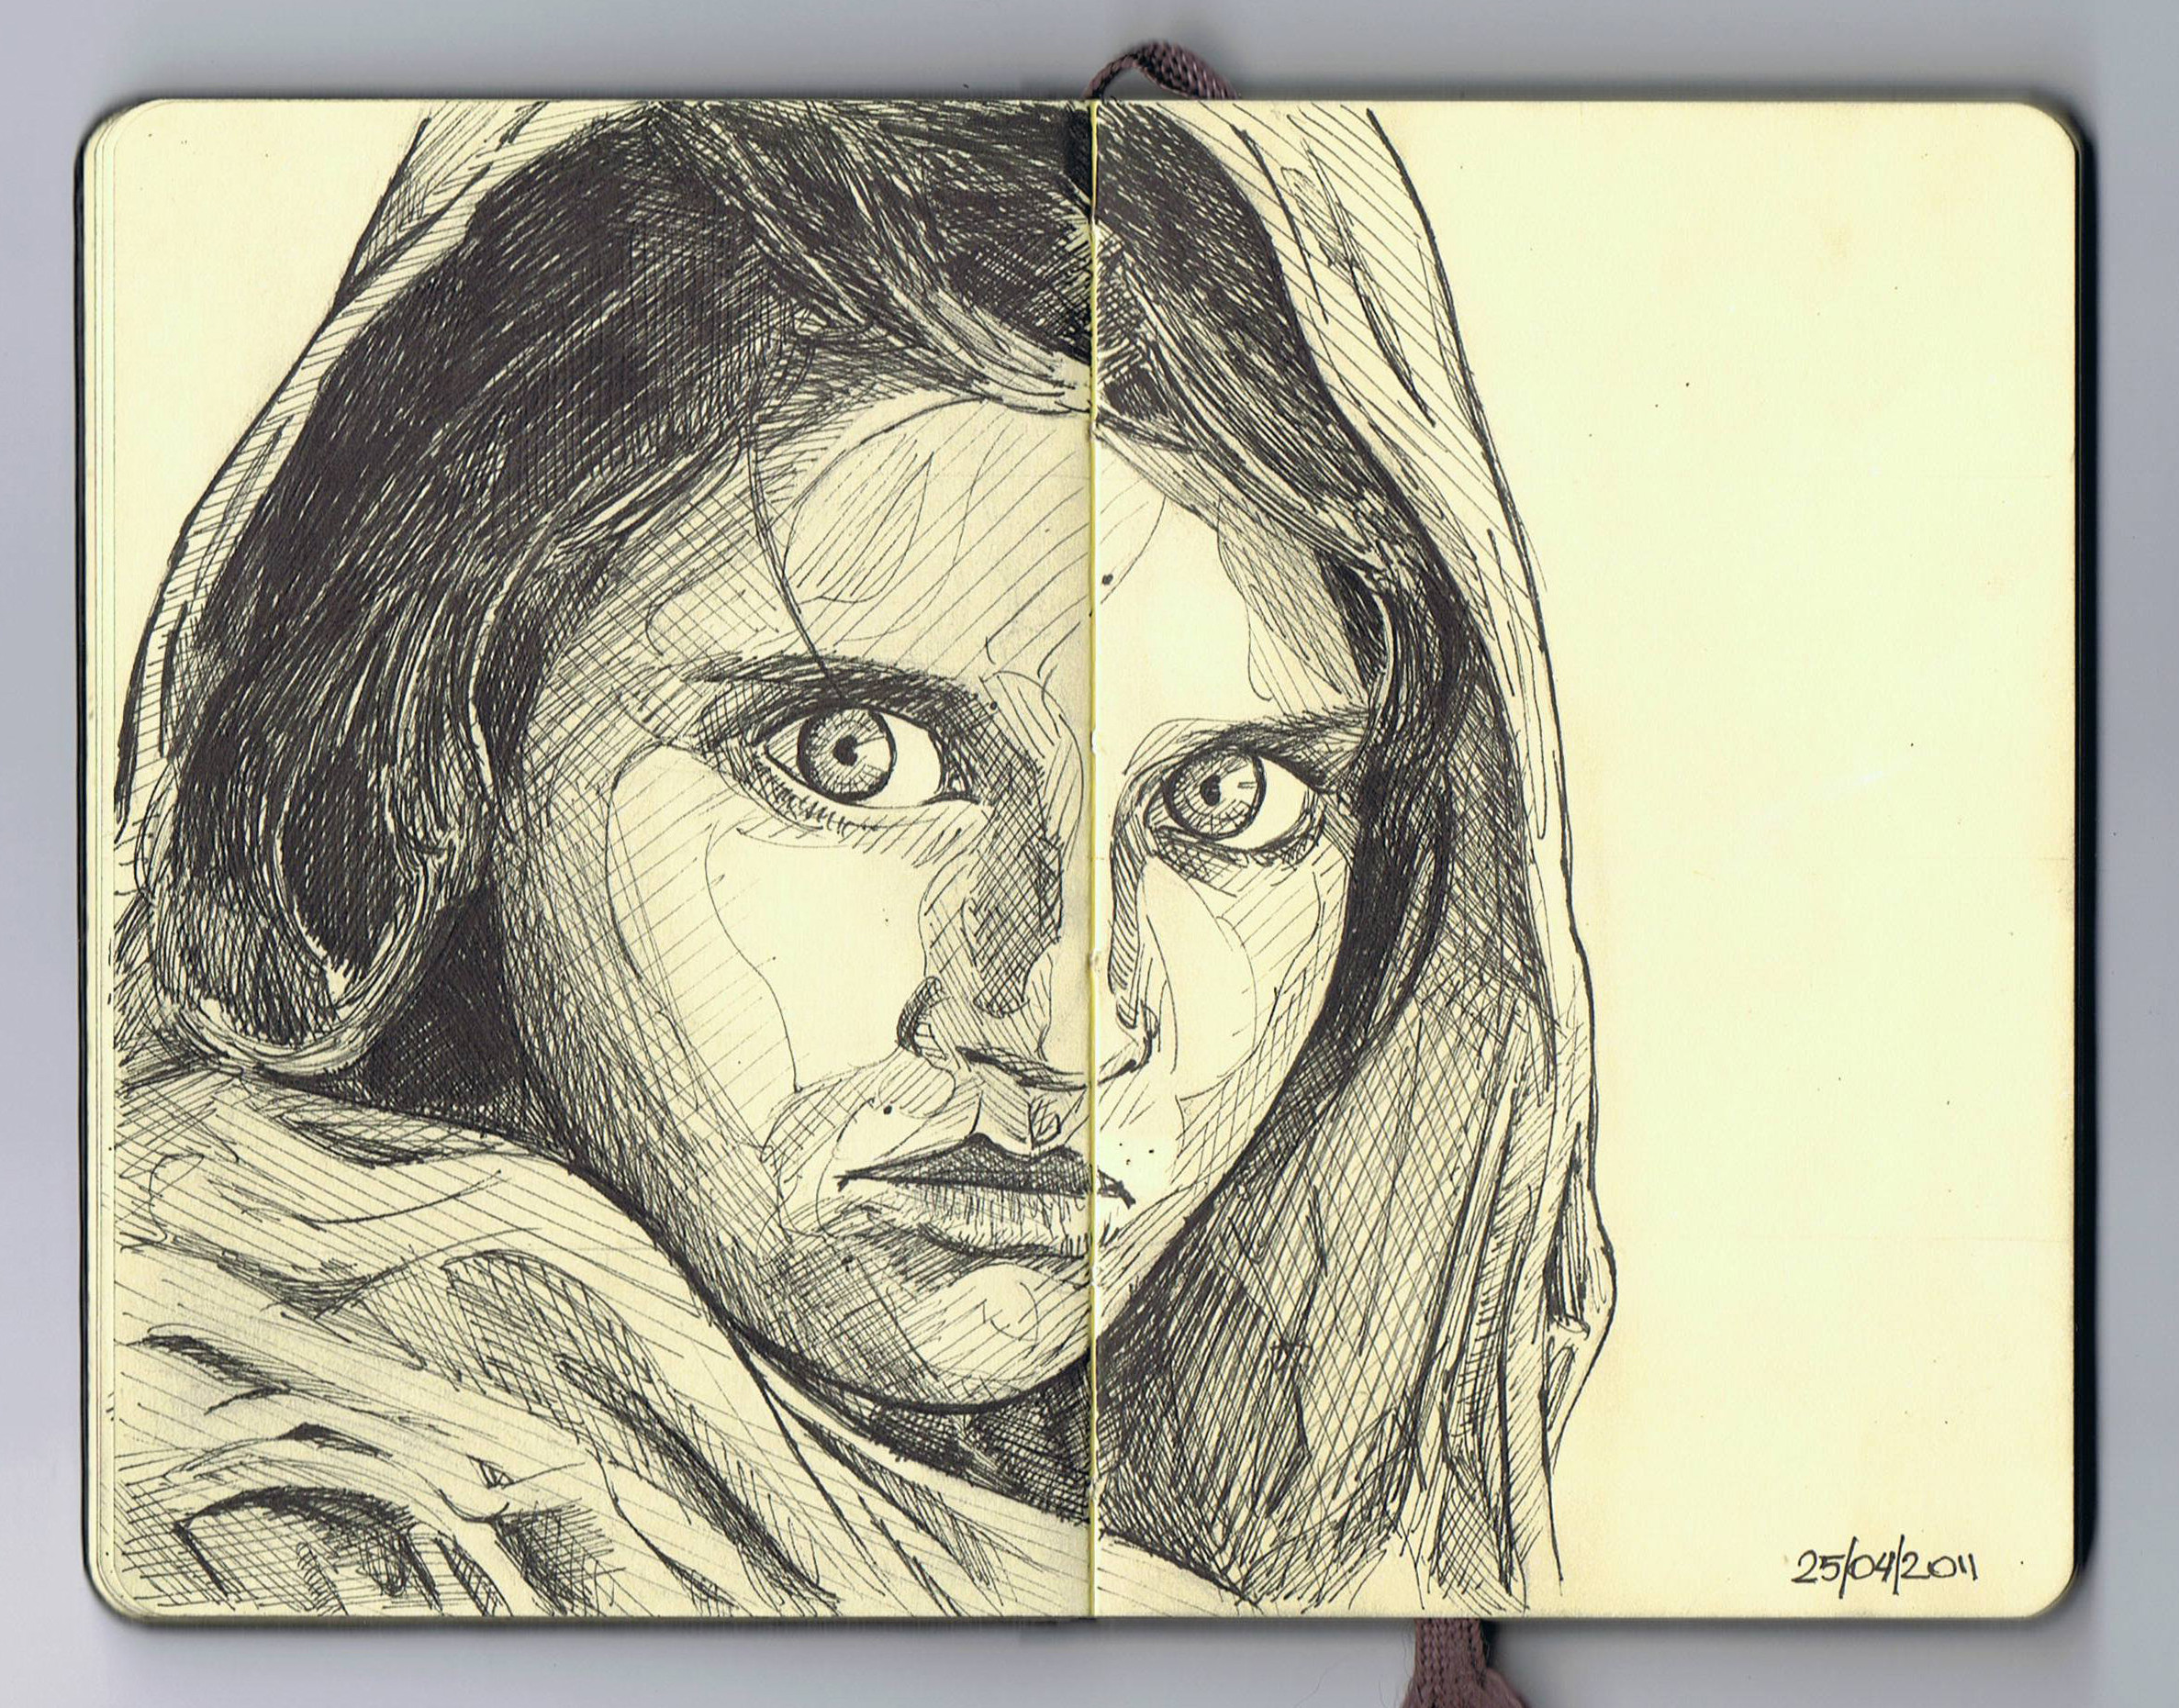 Sharbat Gula (a.k.a. Afghan Girl)